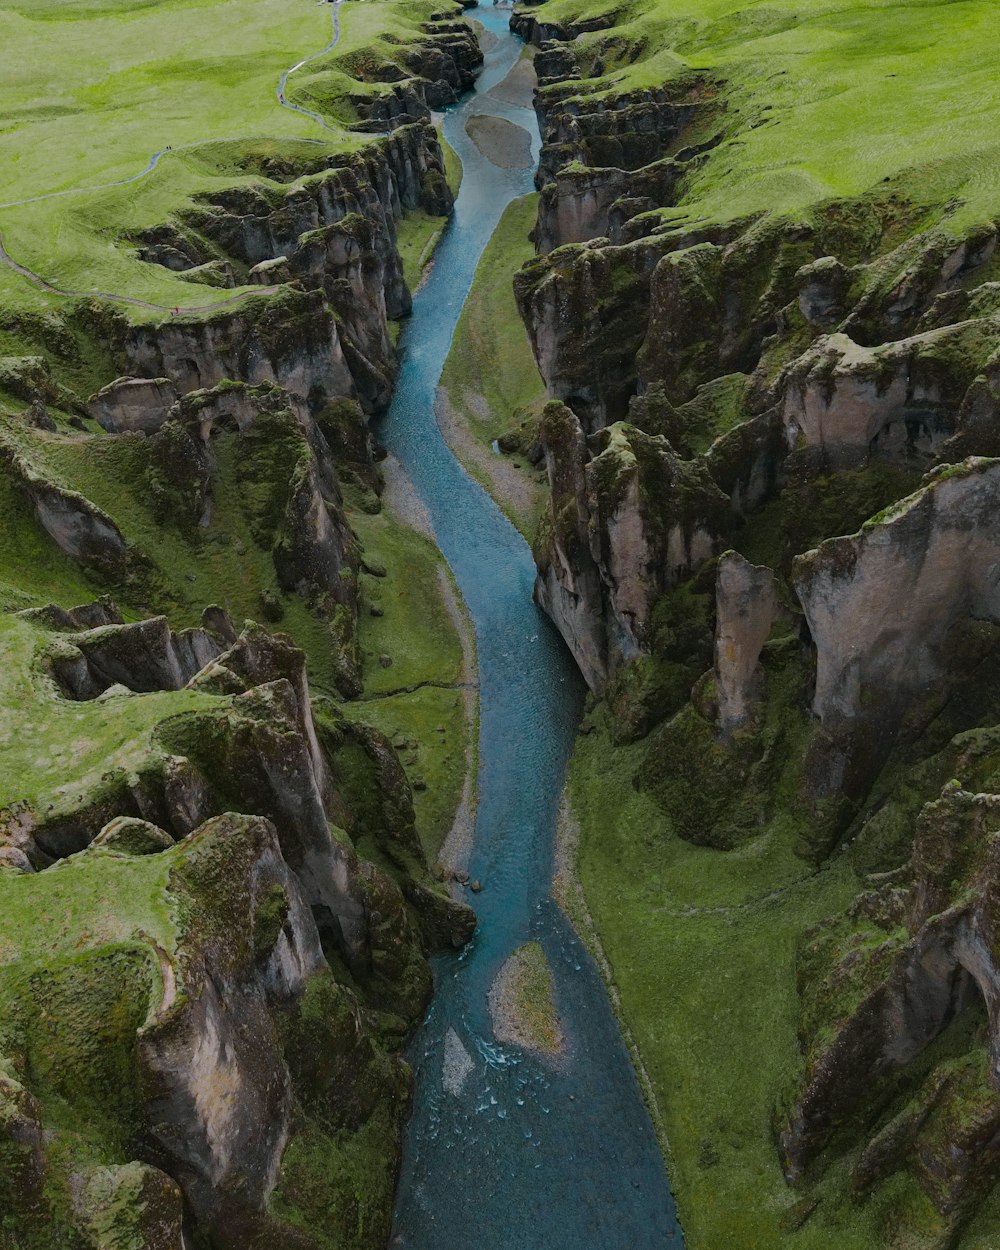 푸른 잔디로 덮인 언덕 한가운데에 있는 강